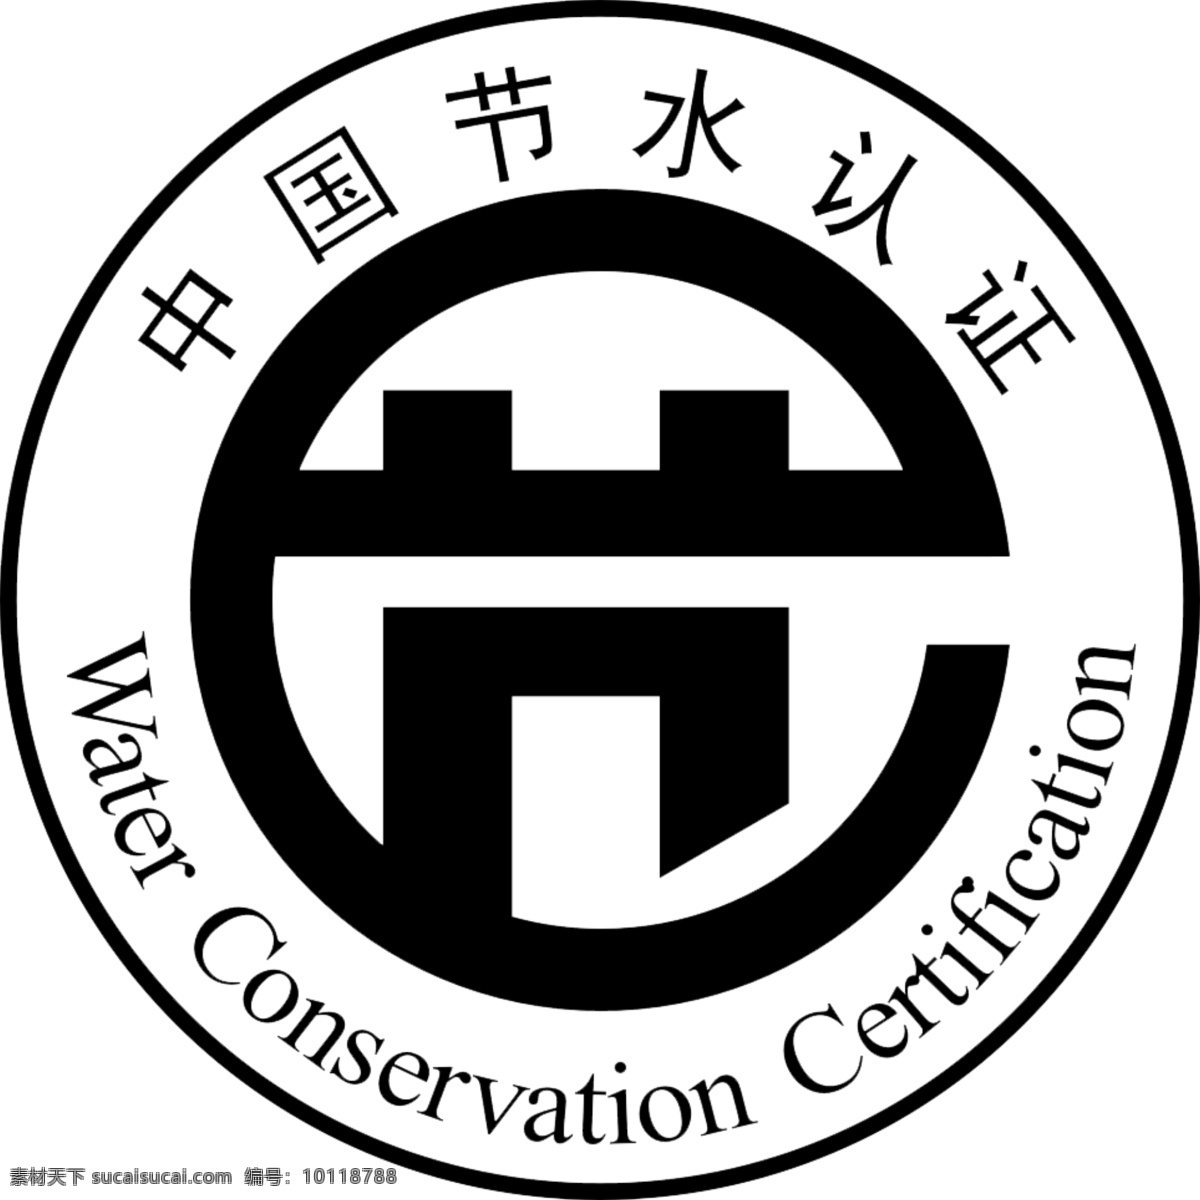 中国 节水 认证 water 认证商标 中国节水认证 节水商标 psd源文件 logo设计